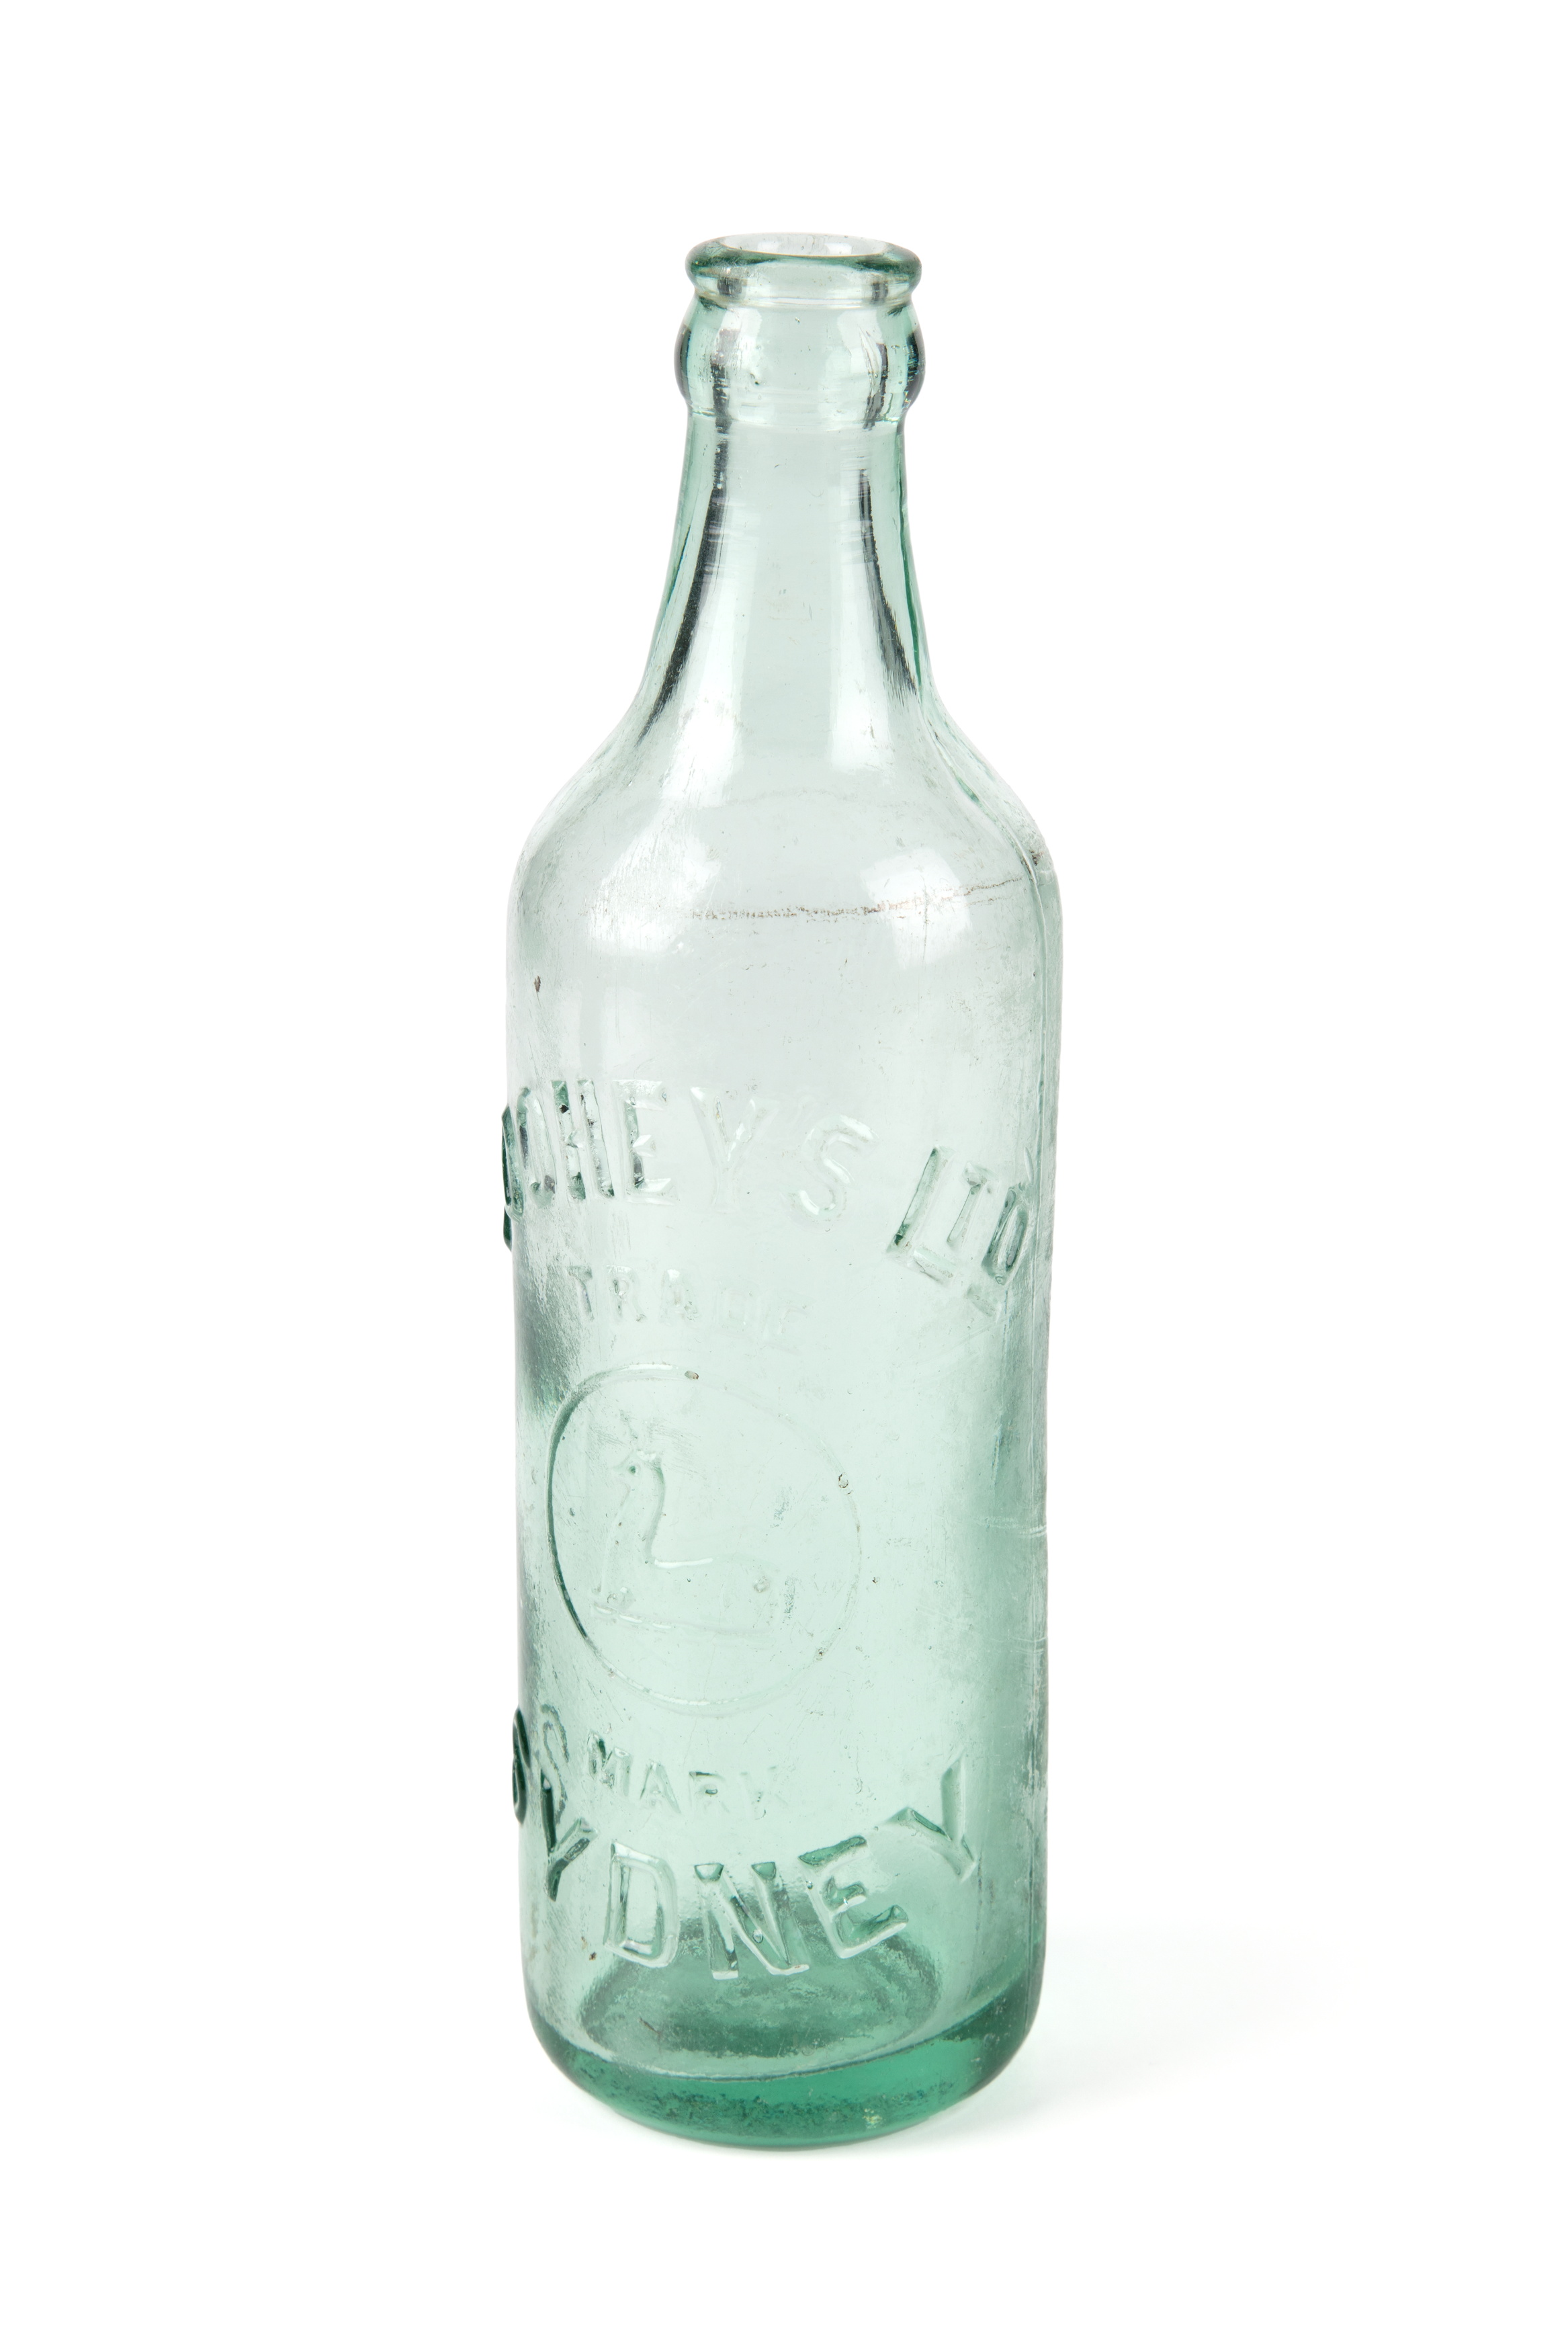 Tooheys green glass bottle